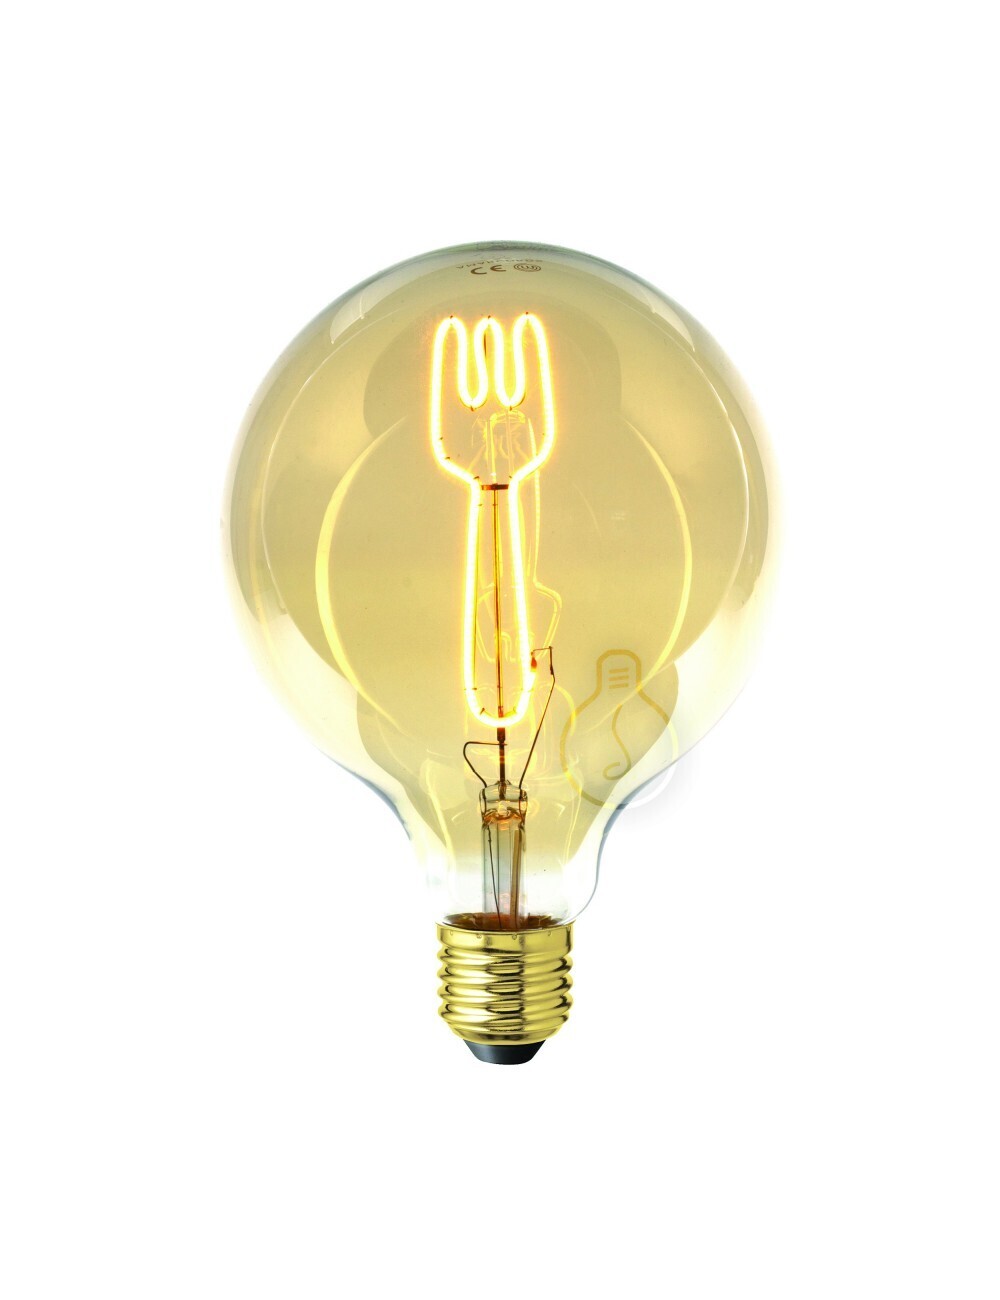 Lampadina filamento LED Masterchef a forma di forchetta per Ristorante, Cucina, Negozi Gastonomia, Ristorazione 4W E27 Globo G125 vetro ambrato